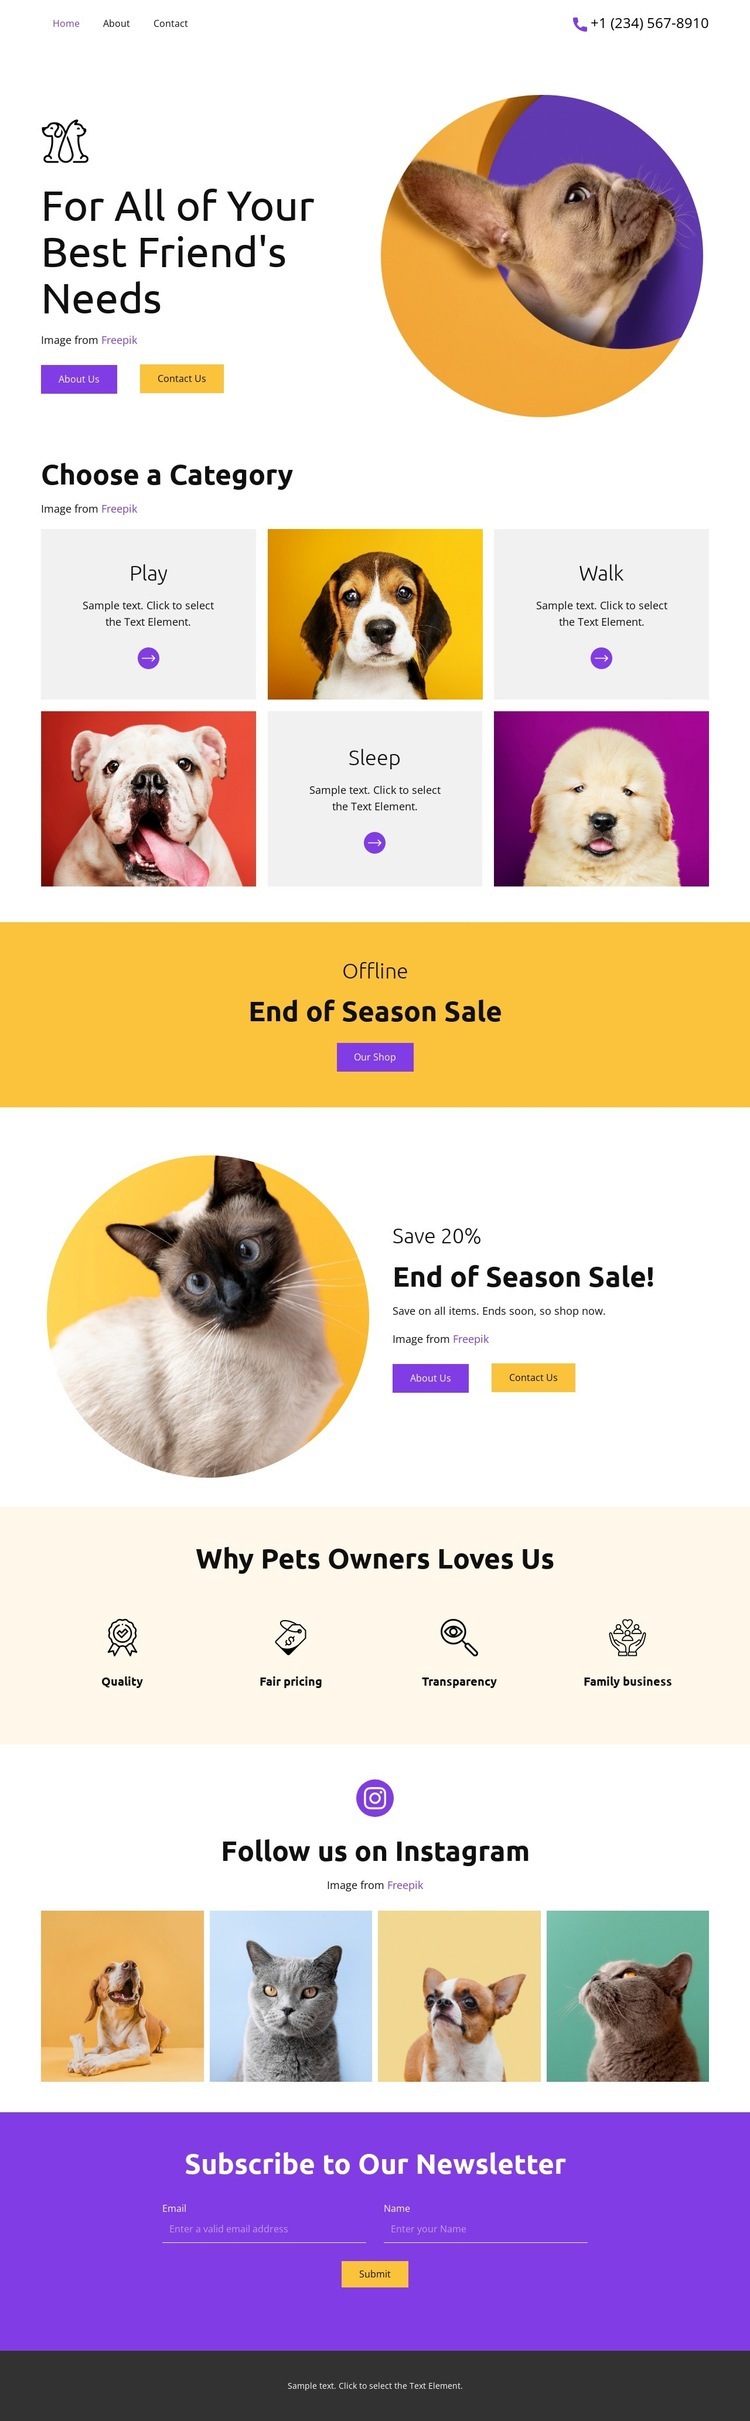 Best Friend's Homepage Design